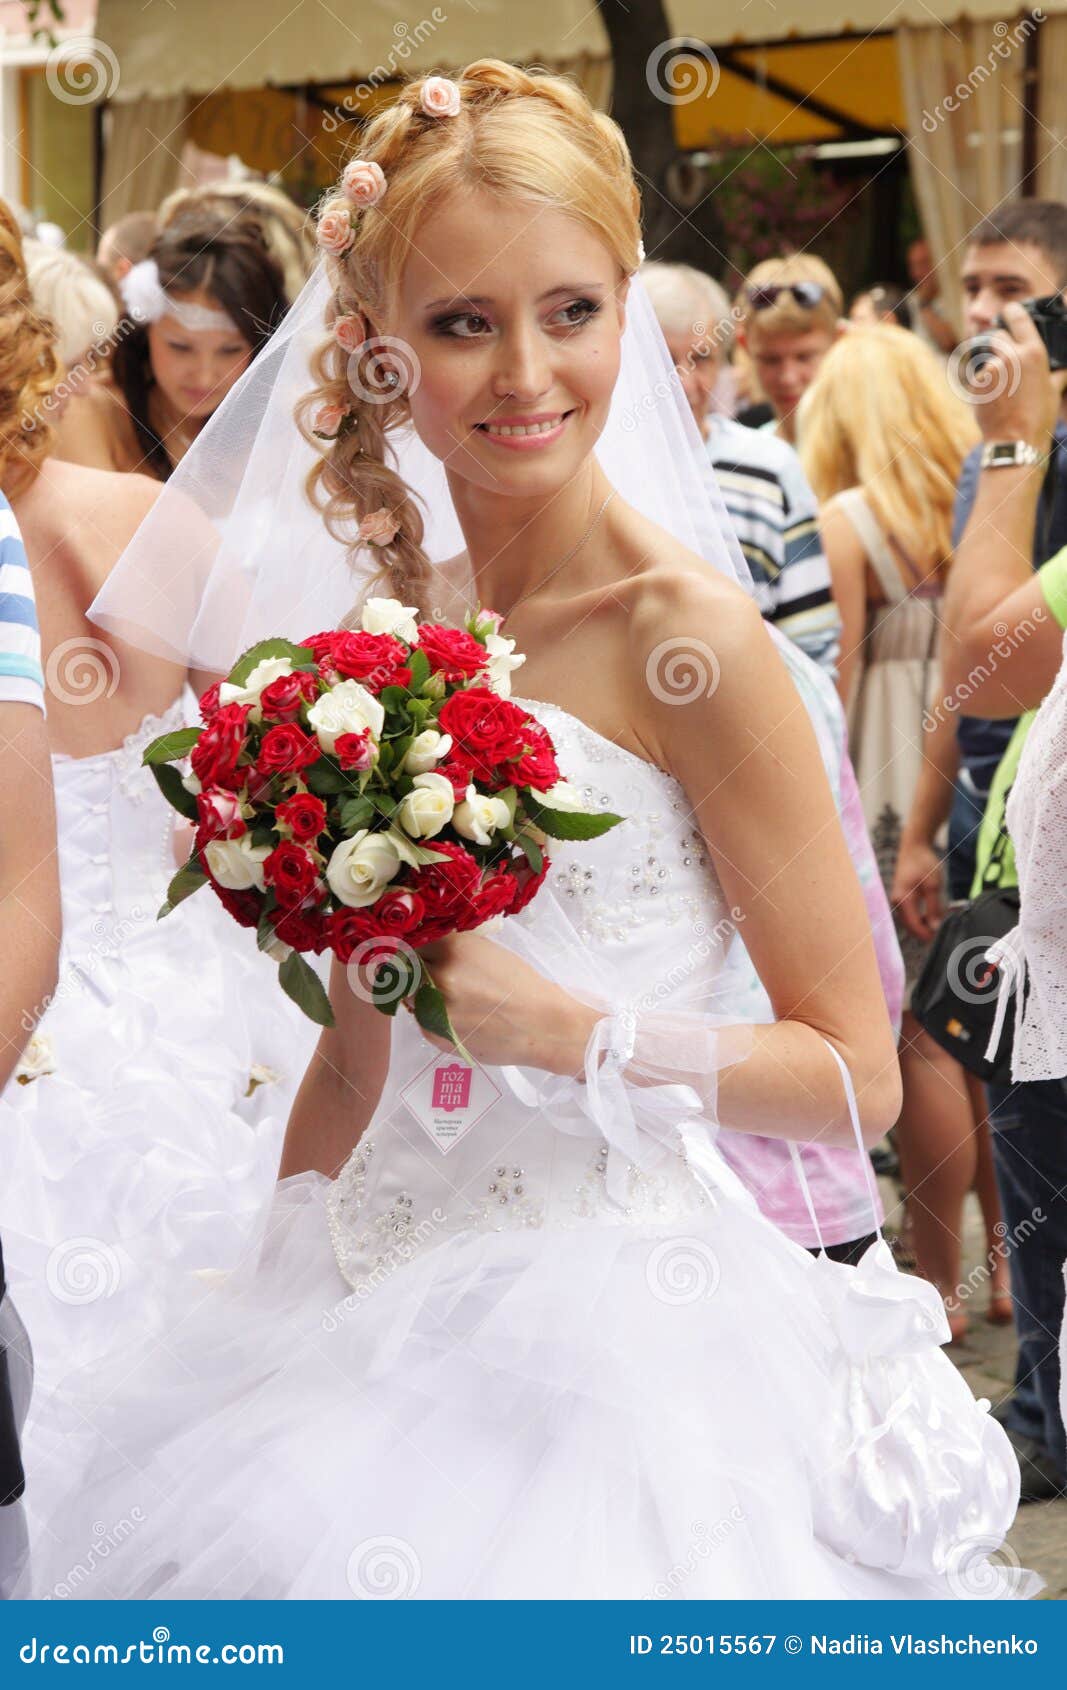 Brides On Parade 120